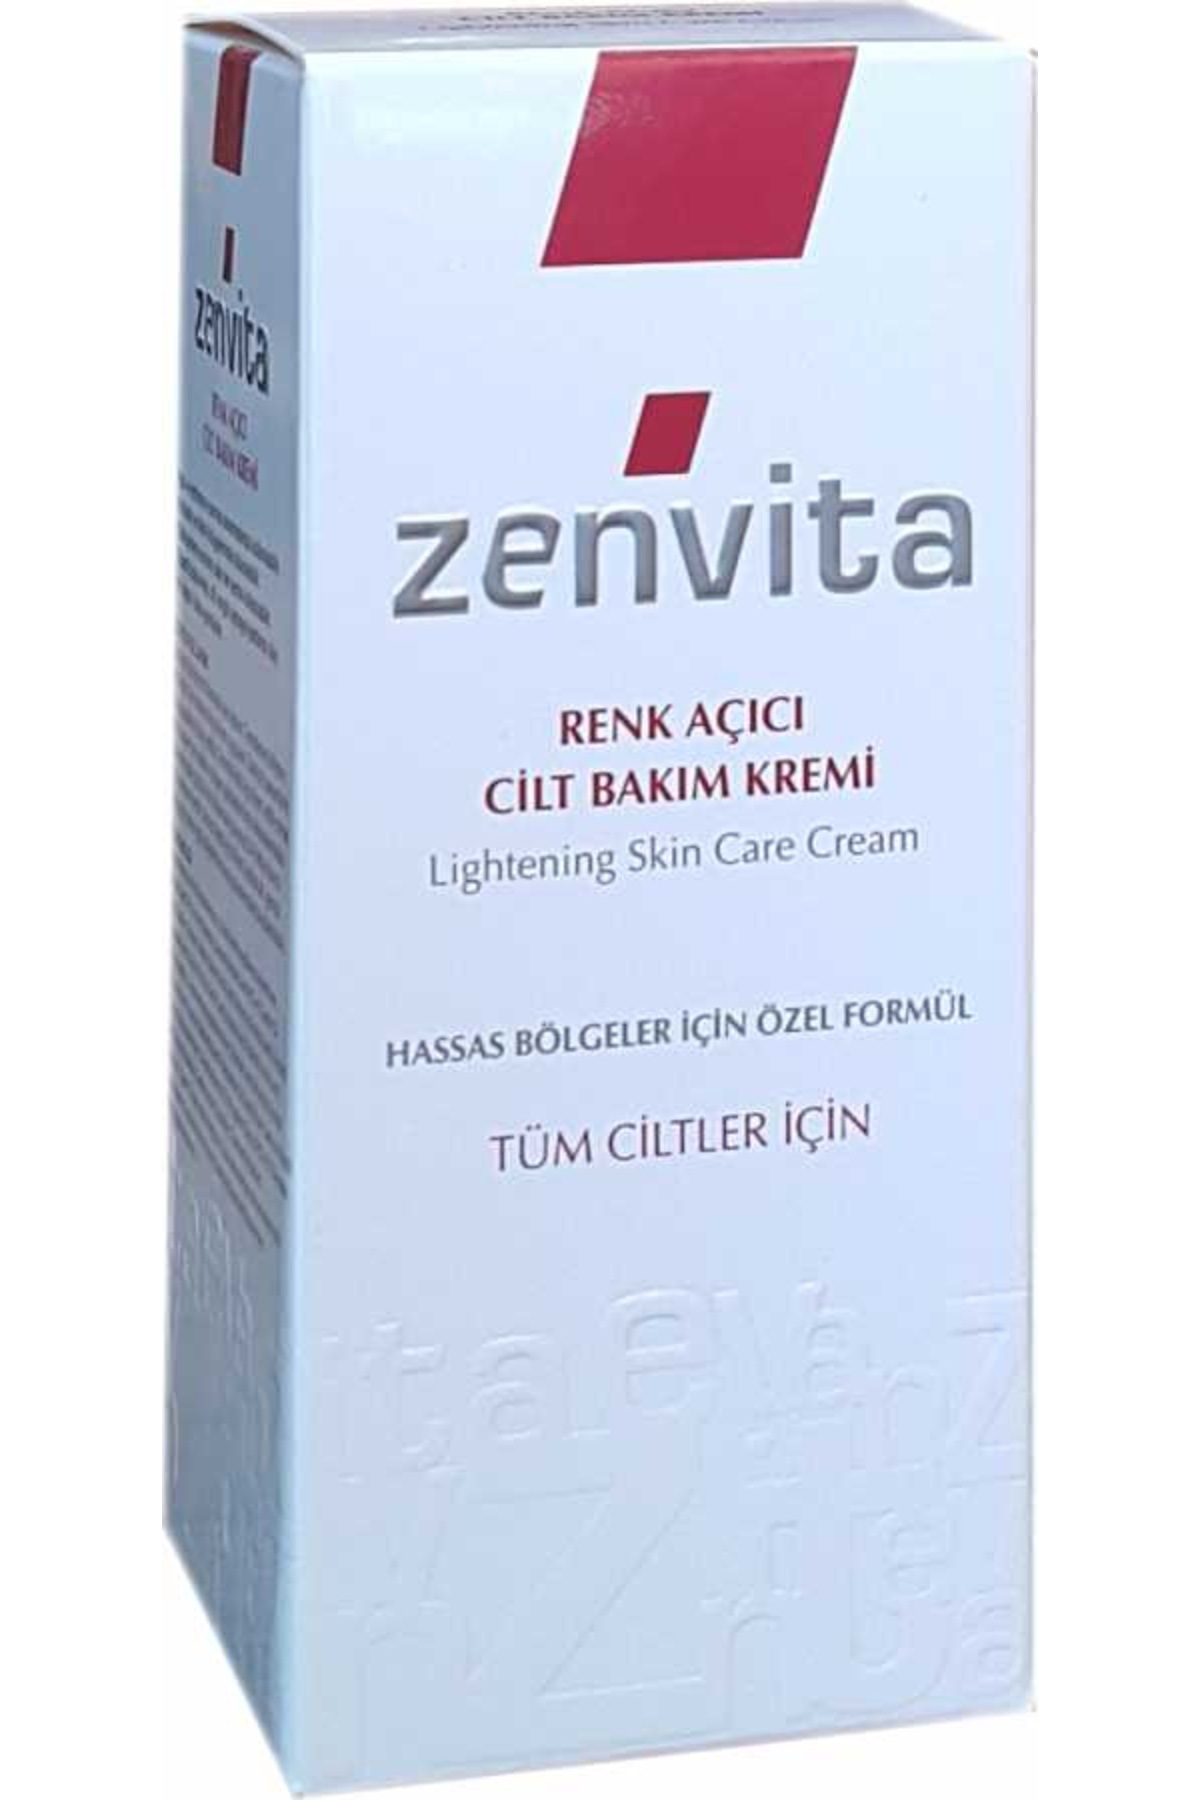 Zenvita Koltuk Altı &amp; Bikini Bölgesi Renk Açıcı Krem 50 ml Fiyatları ve